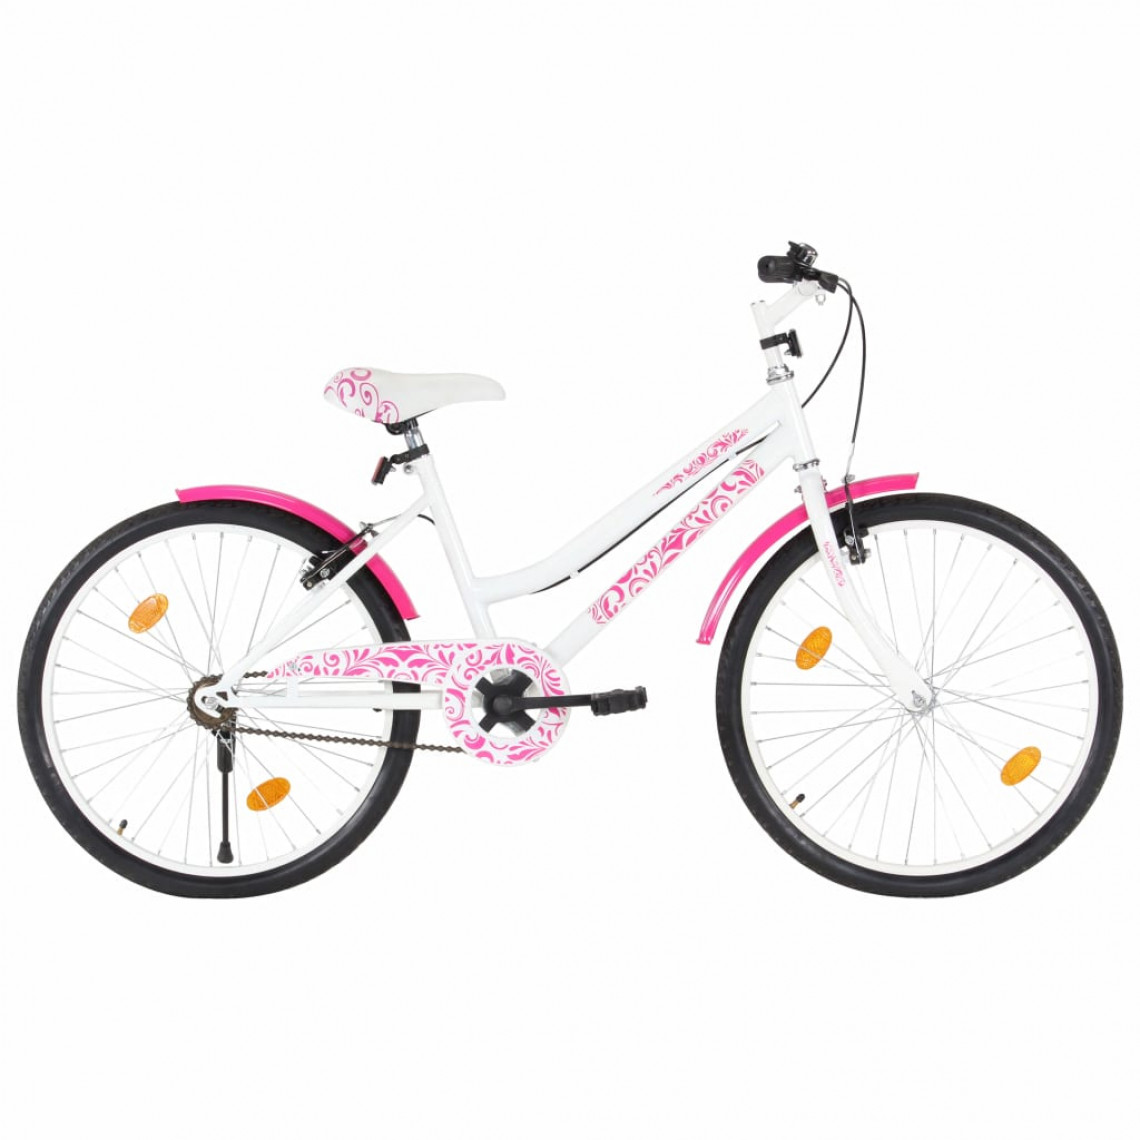 Icaverne - Moderne Cyclisme categorie Lisbonne Vélo pour enfants 24 pouces Rose et blanc - Vélo électrique